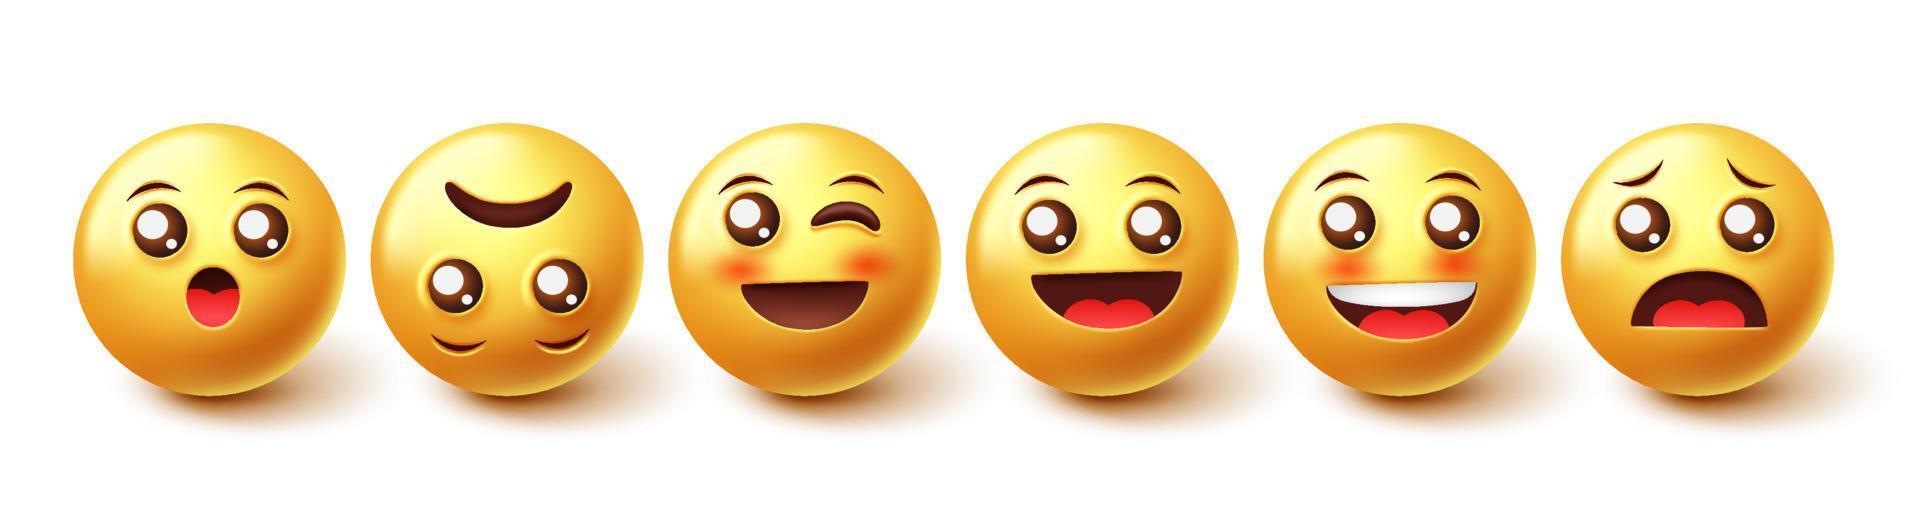 emoji's vector tekenset. emoticons 3D-grafisch ontwerp emoji in glimlachen, blozen en verrast gezicht tekens collectie geïsoleerd op een witte achtergrond. vectorillustratie.